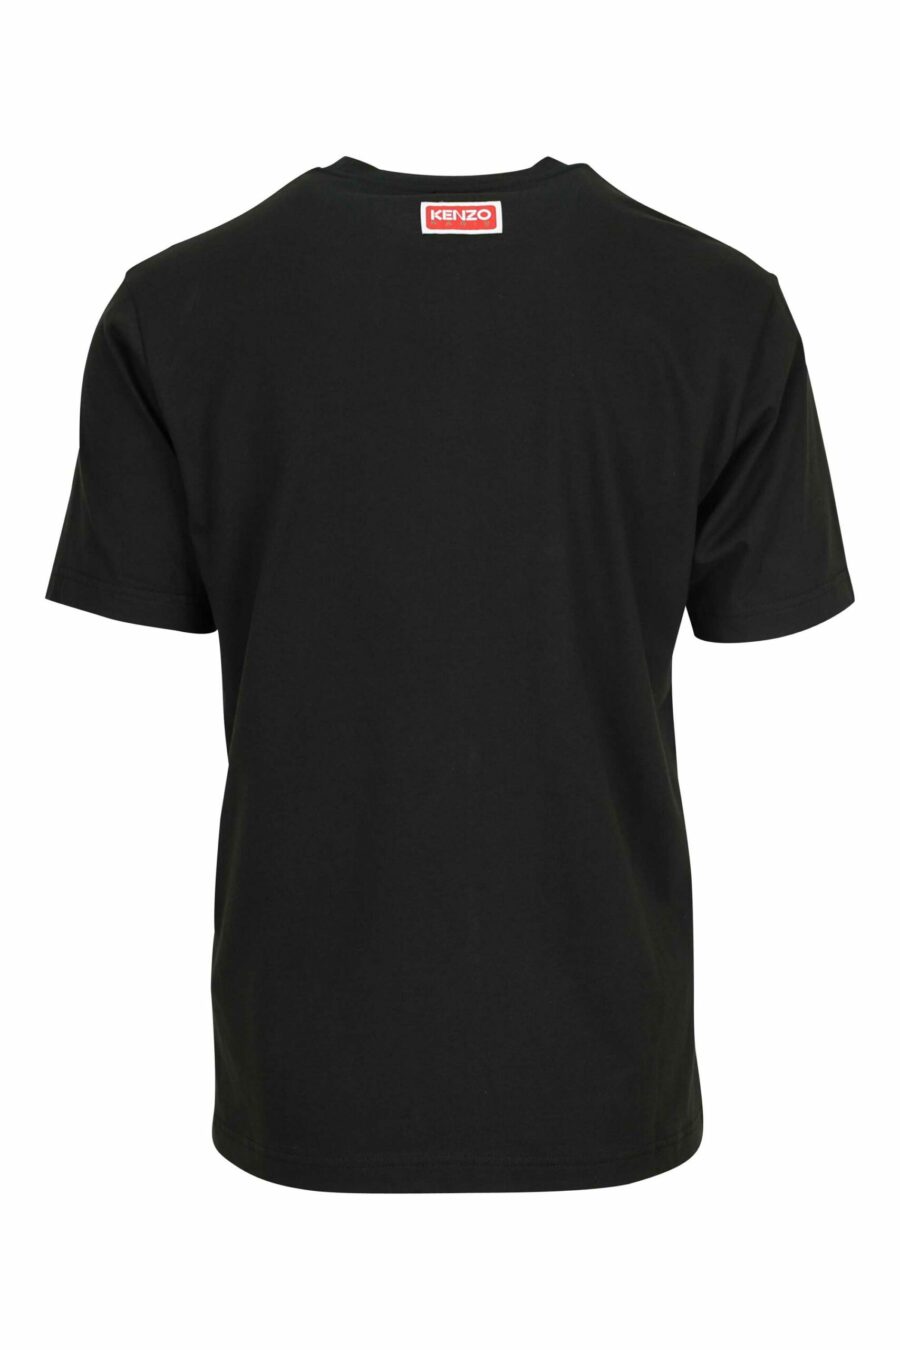 T-shirt preta com maxilogo "kenzo elephant" - 3612230625624 1 scaled